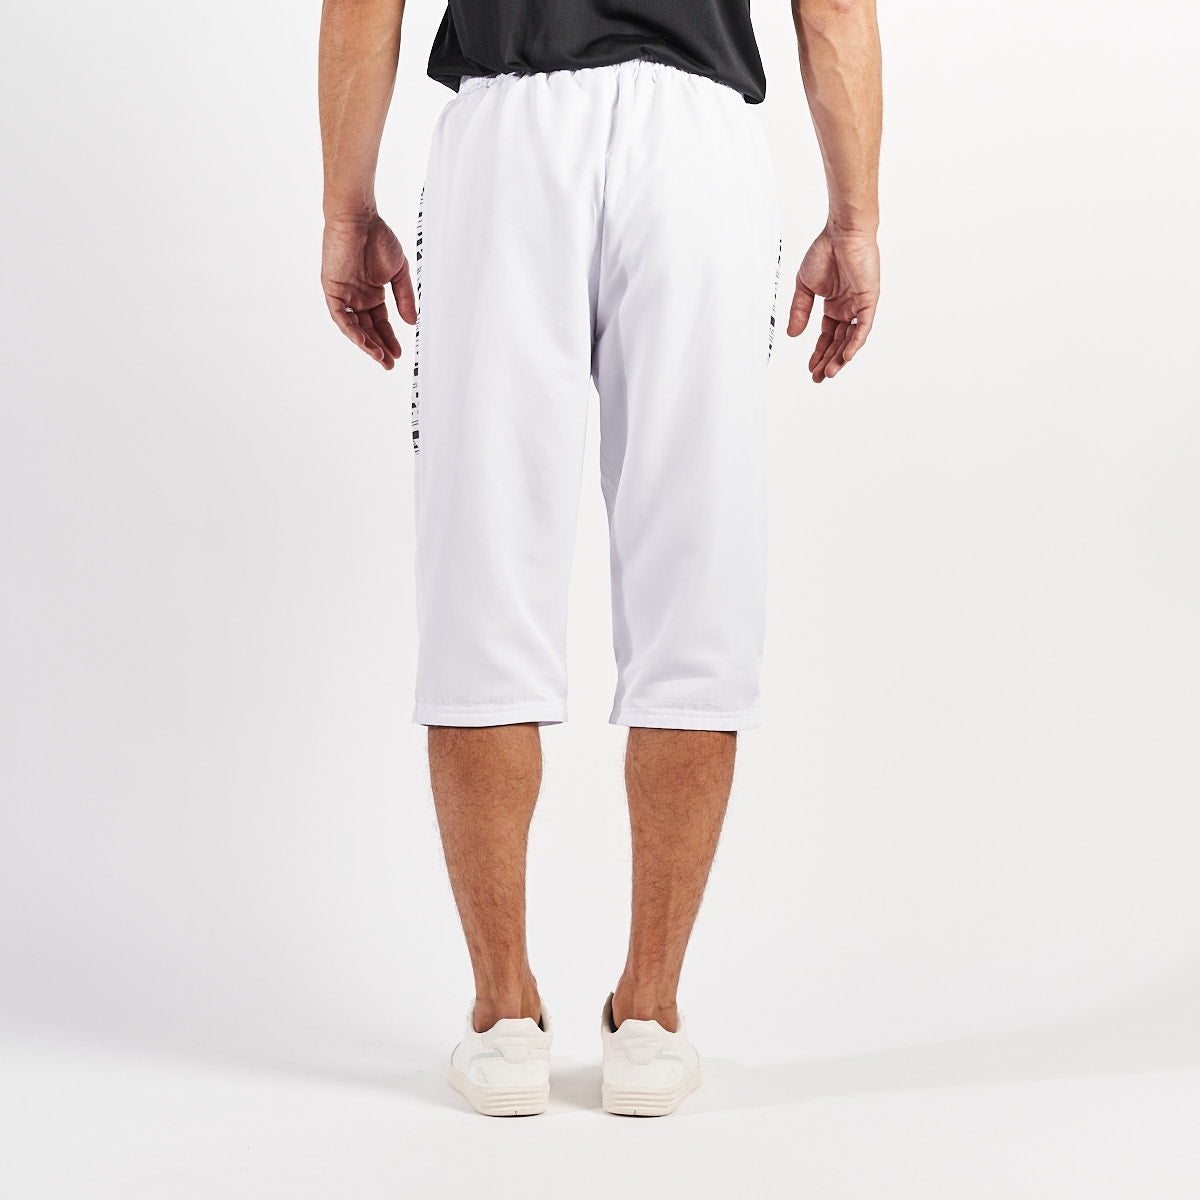 Pantalones cortos Blancos Hombre - imagen 3